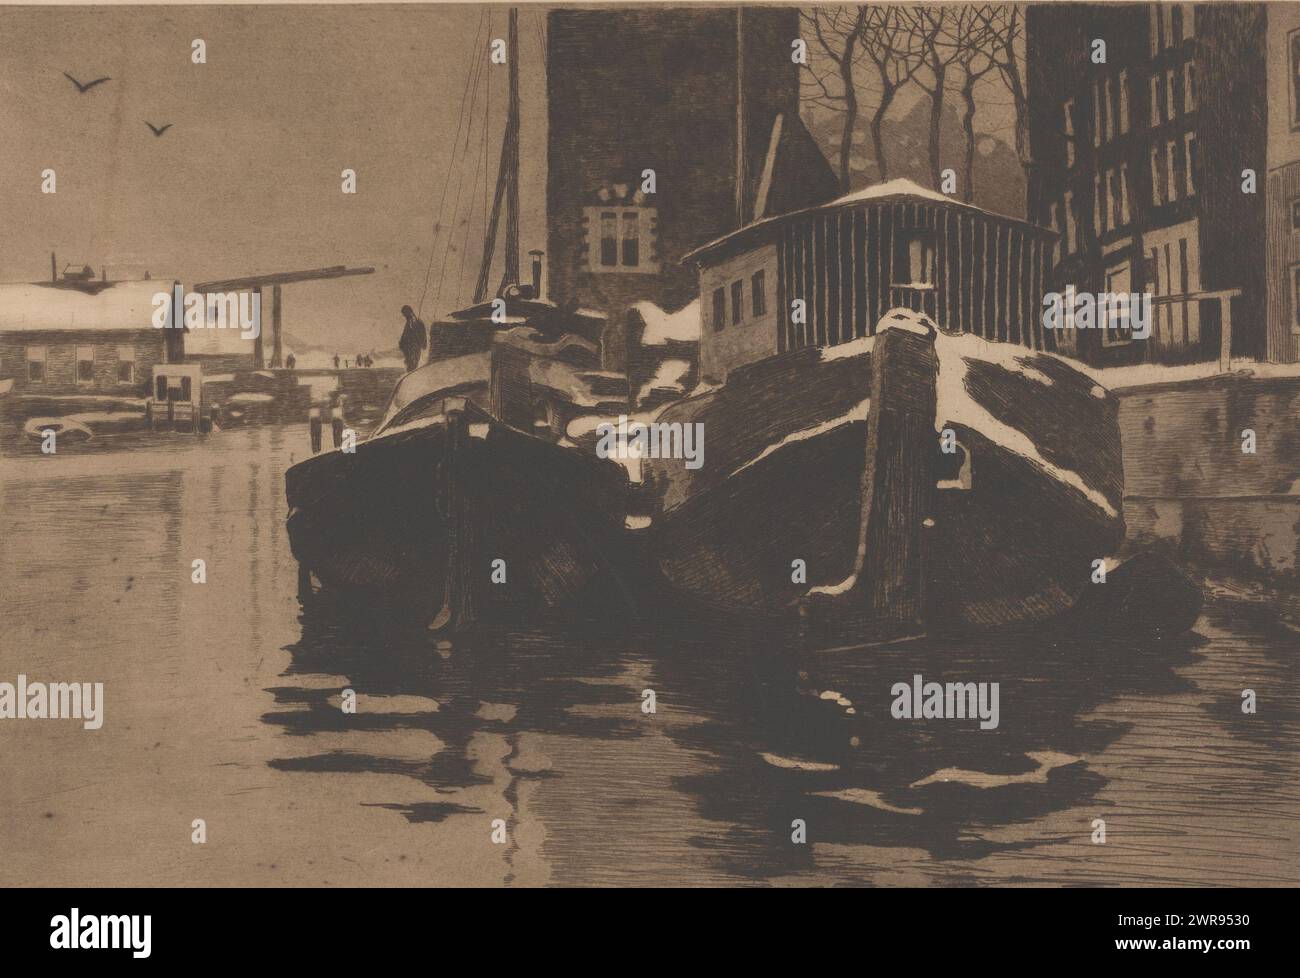 Zwei Boote in der Oude Schans in Amsterdam, zwei Boote in der Oude Schans (Originaltitel), Druckerei: Willem Witsen, ca. 1913 - ca. 1919, Papier, Ätzen, Höhe 296 mm x Breite 426 mm, Druck Stockfoto